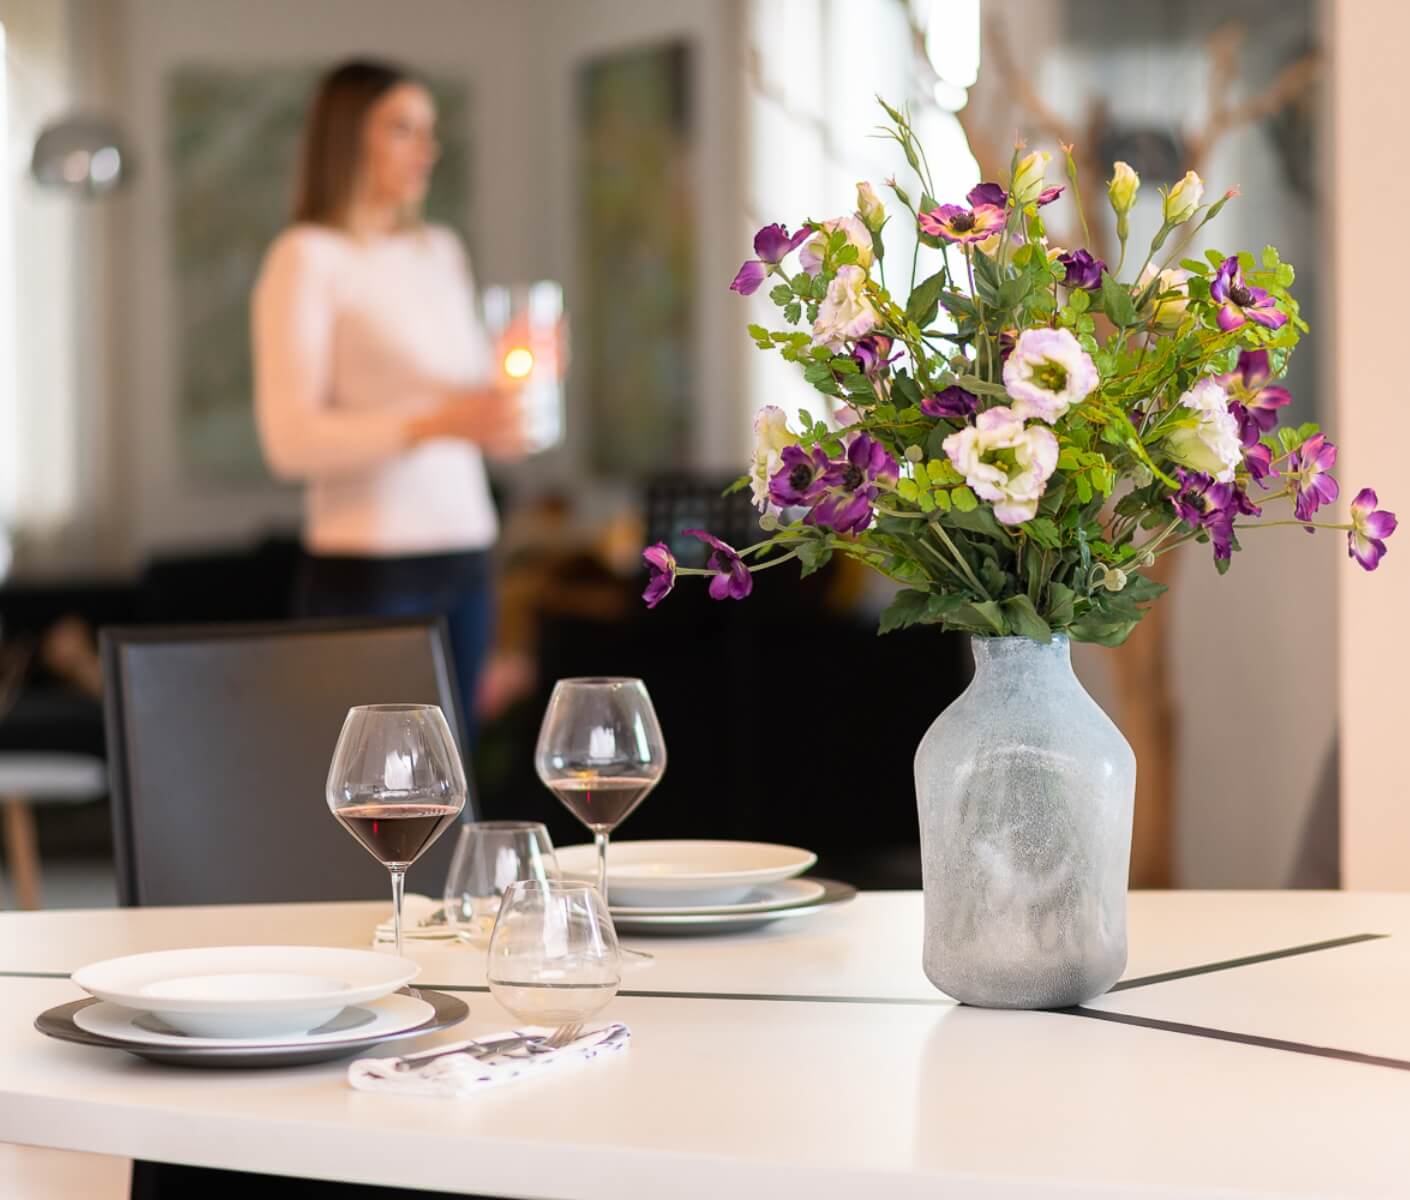 piatti e bicchieri su un tavolo con un vaso pieno di fiori